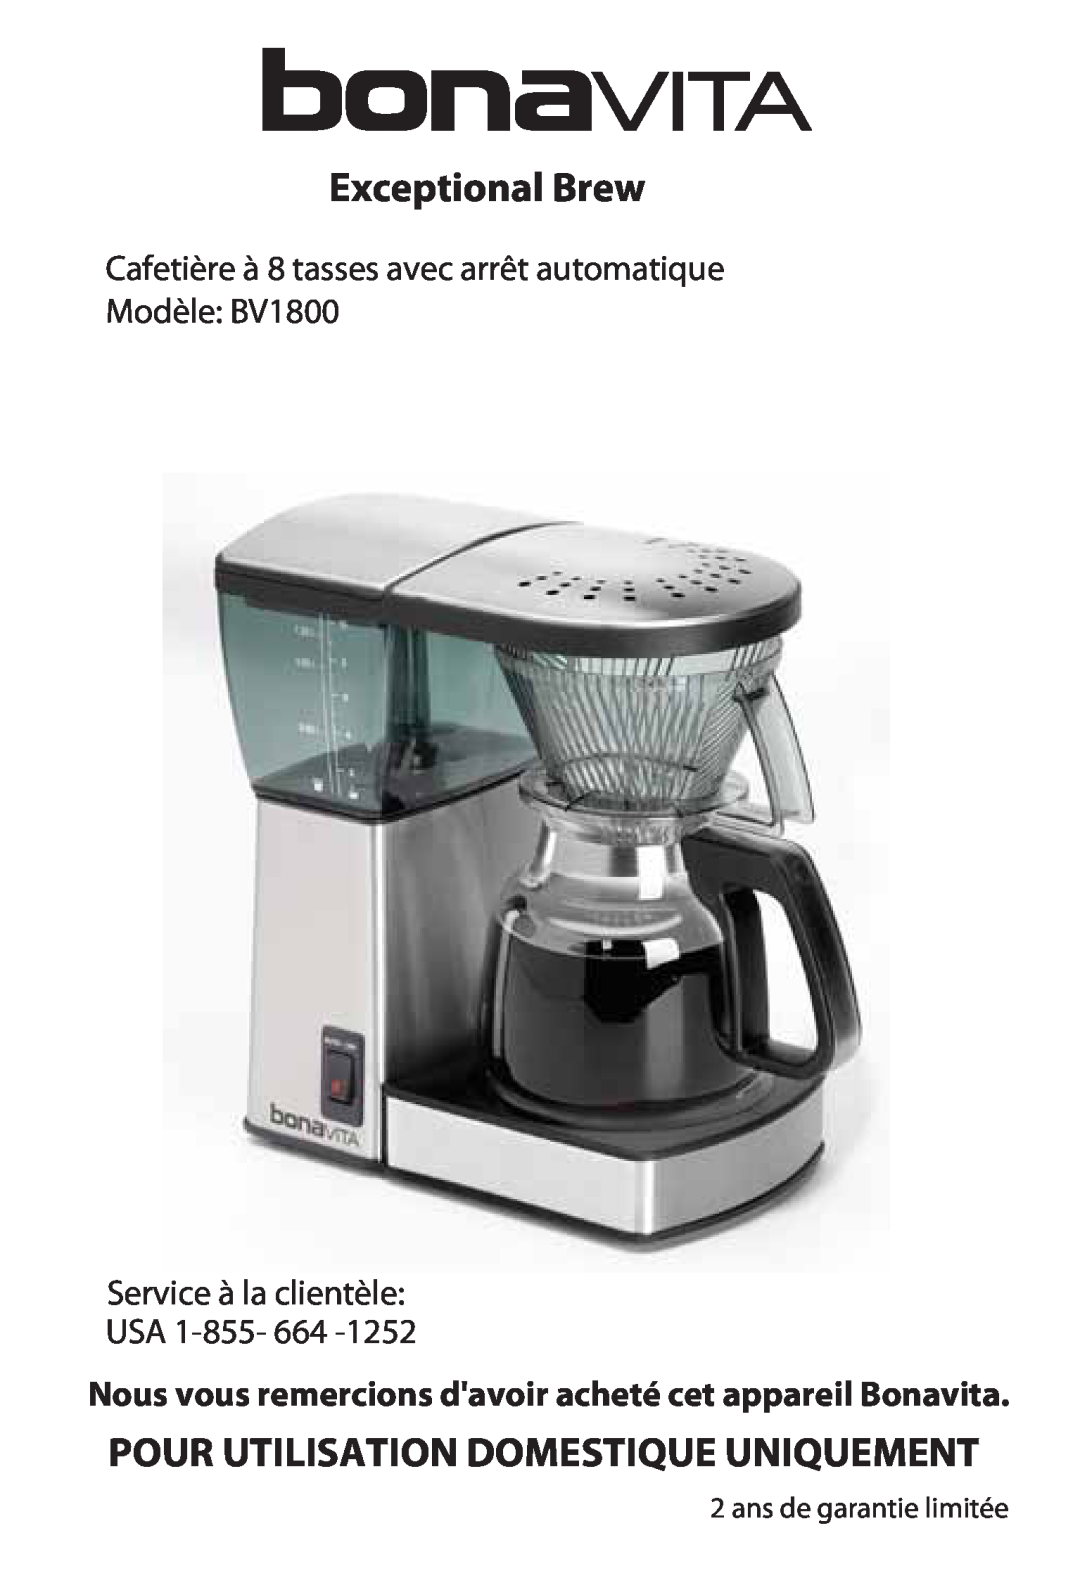 Bonavita warranty Cafetière à 8 tasses avec arrêt automatique, Modèle BV1800 Service à la clientèle, USA 1-855-664 